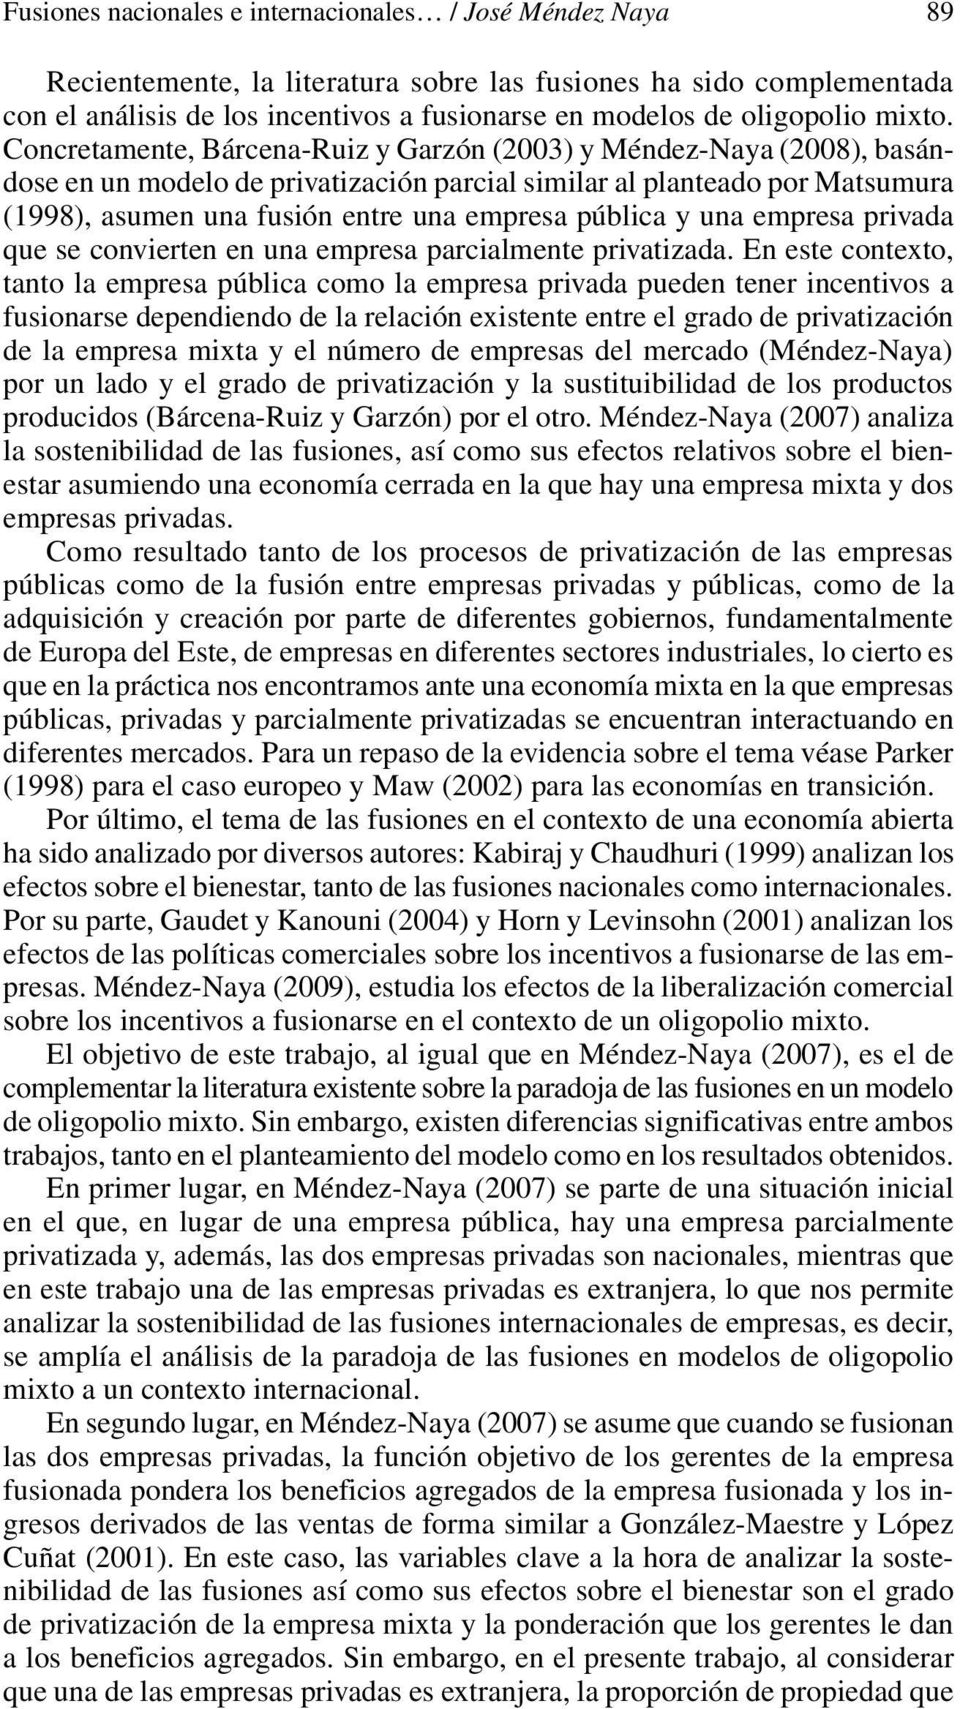 Concretamente, Bárcena-Ruiz y Garzón (003 y Méndez-Naya (008, basándose en un modelo de privatización parcial similar al planteado por Matsumura (1998, asumen una fusión entre una empresa pública y